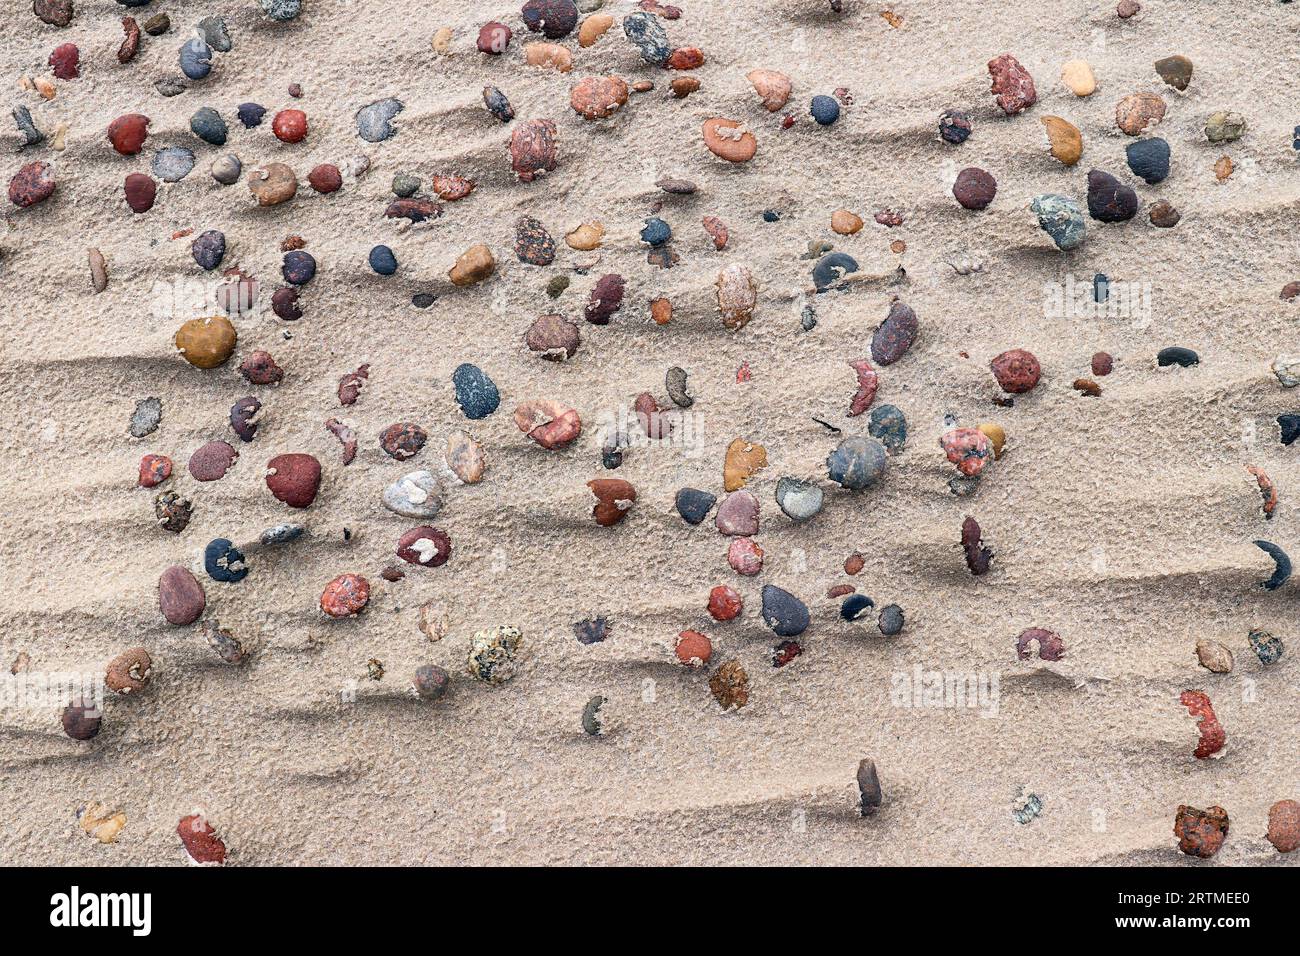 Dettaglio di vari ciottoli marini su una spiaggia sabbiosa - pietre di ghiaia Foto Stock